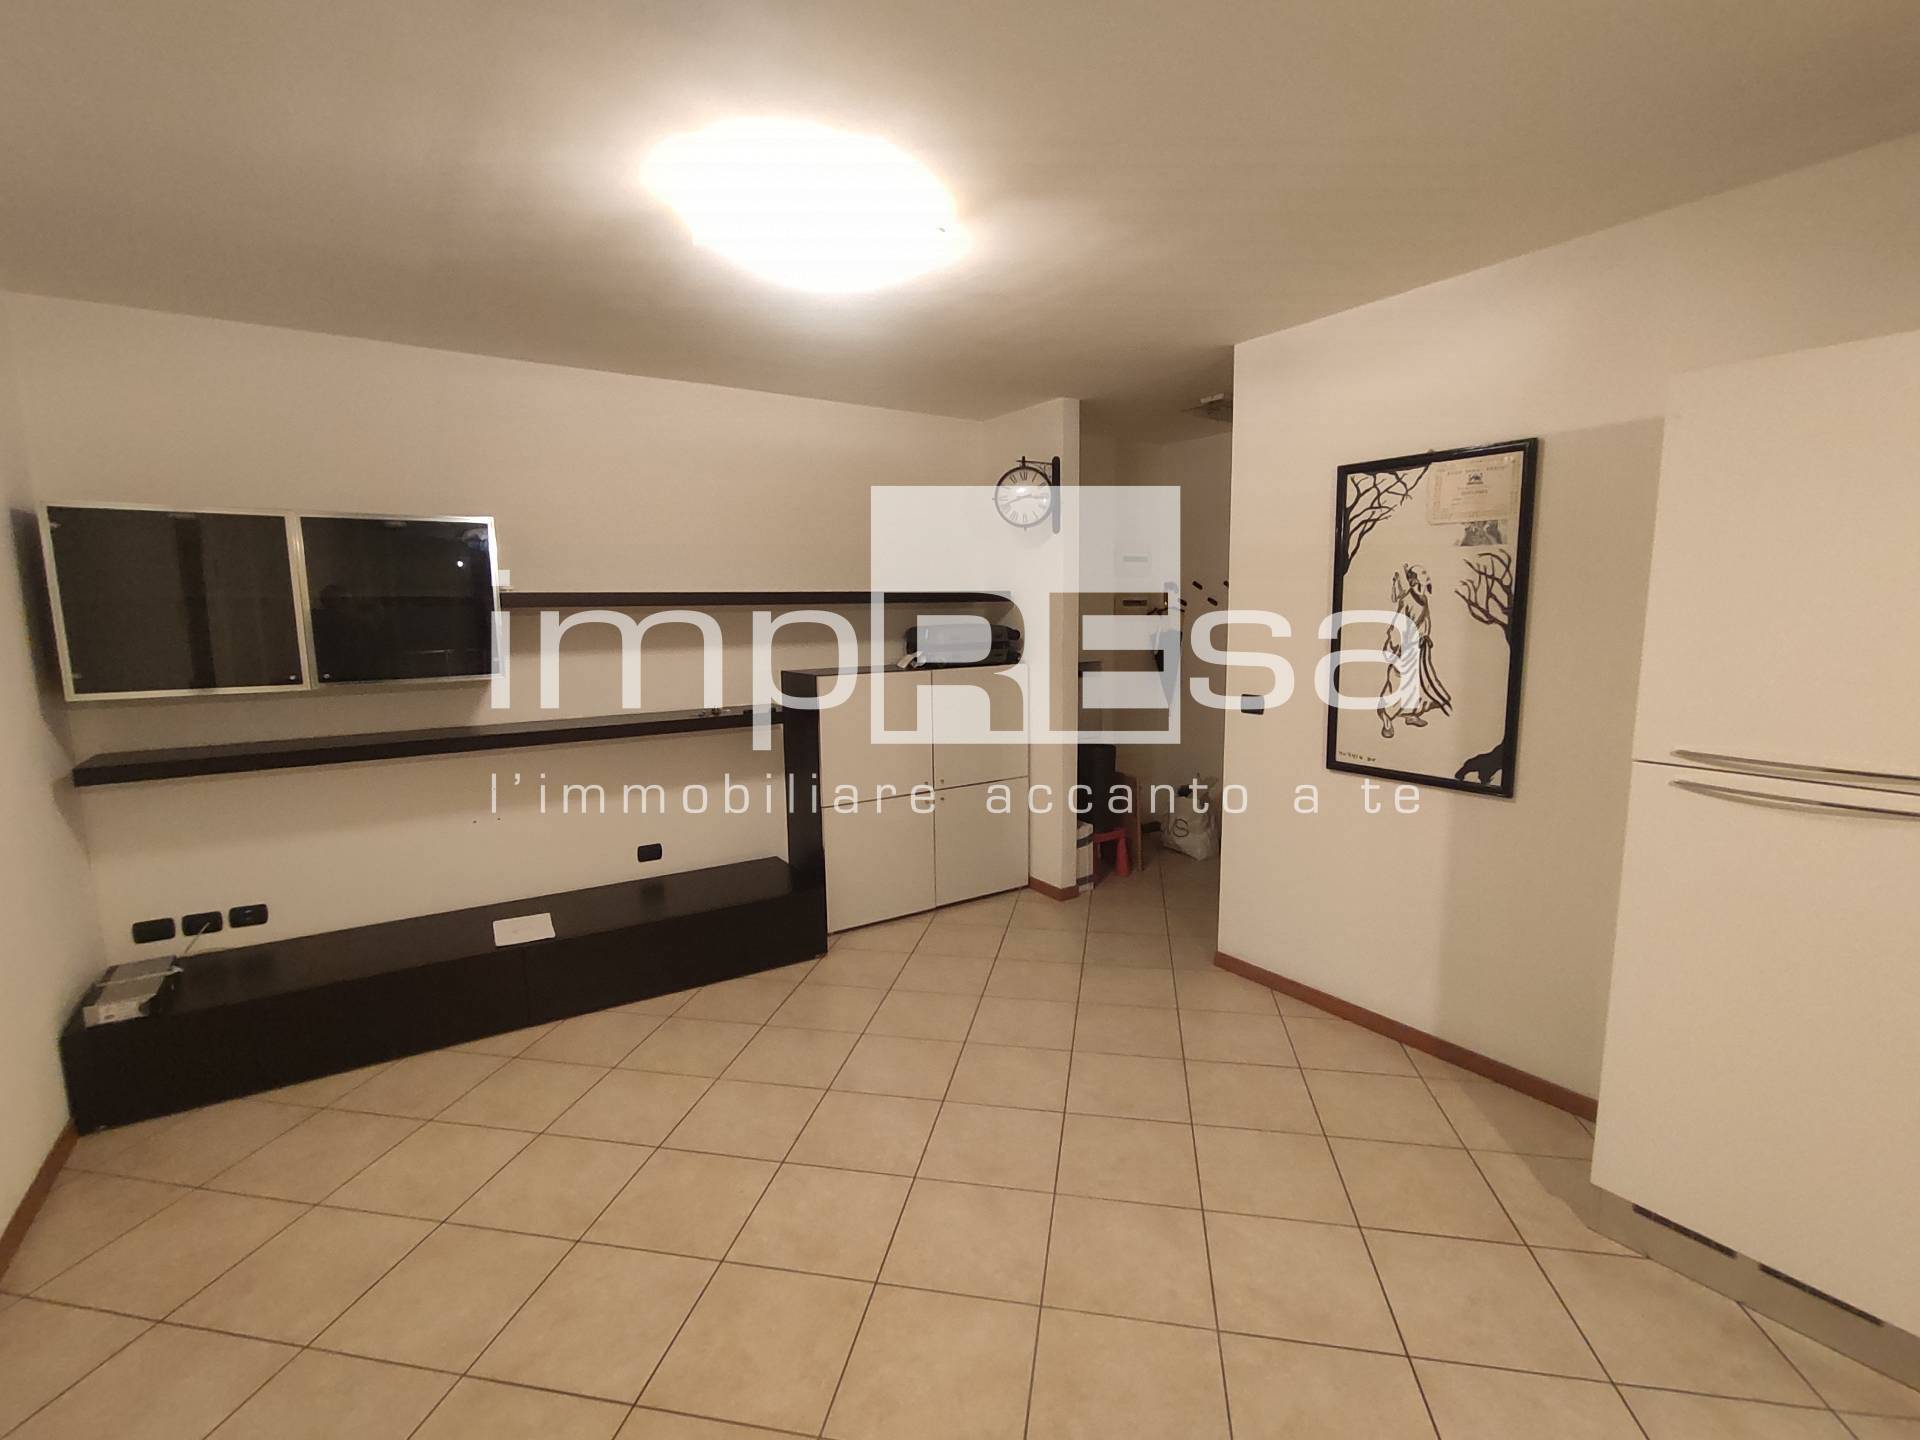 Appartamento in vendita a Spinea, 3 locali, prezzo € 185.000 | PortaleAgenzieImmobiliari.it